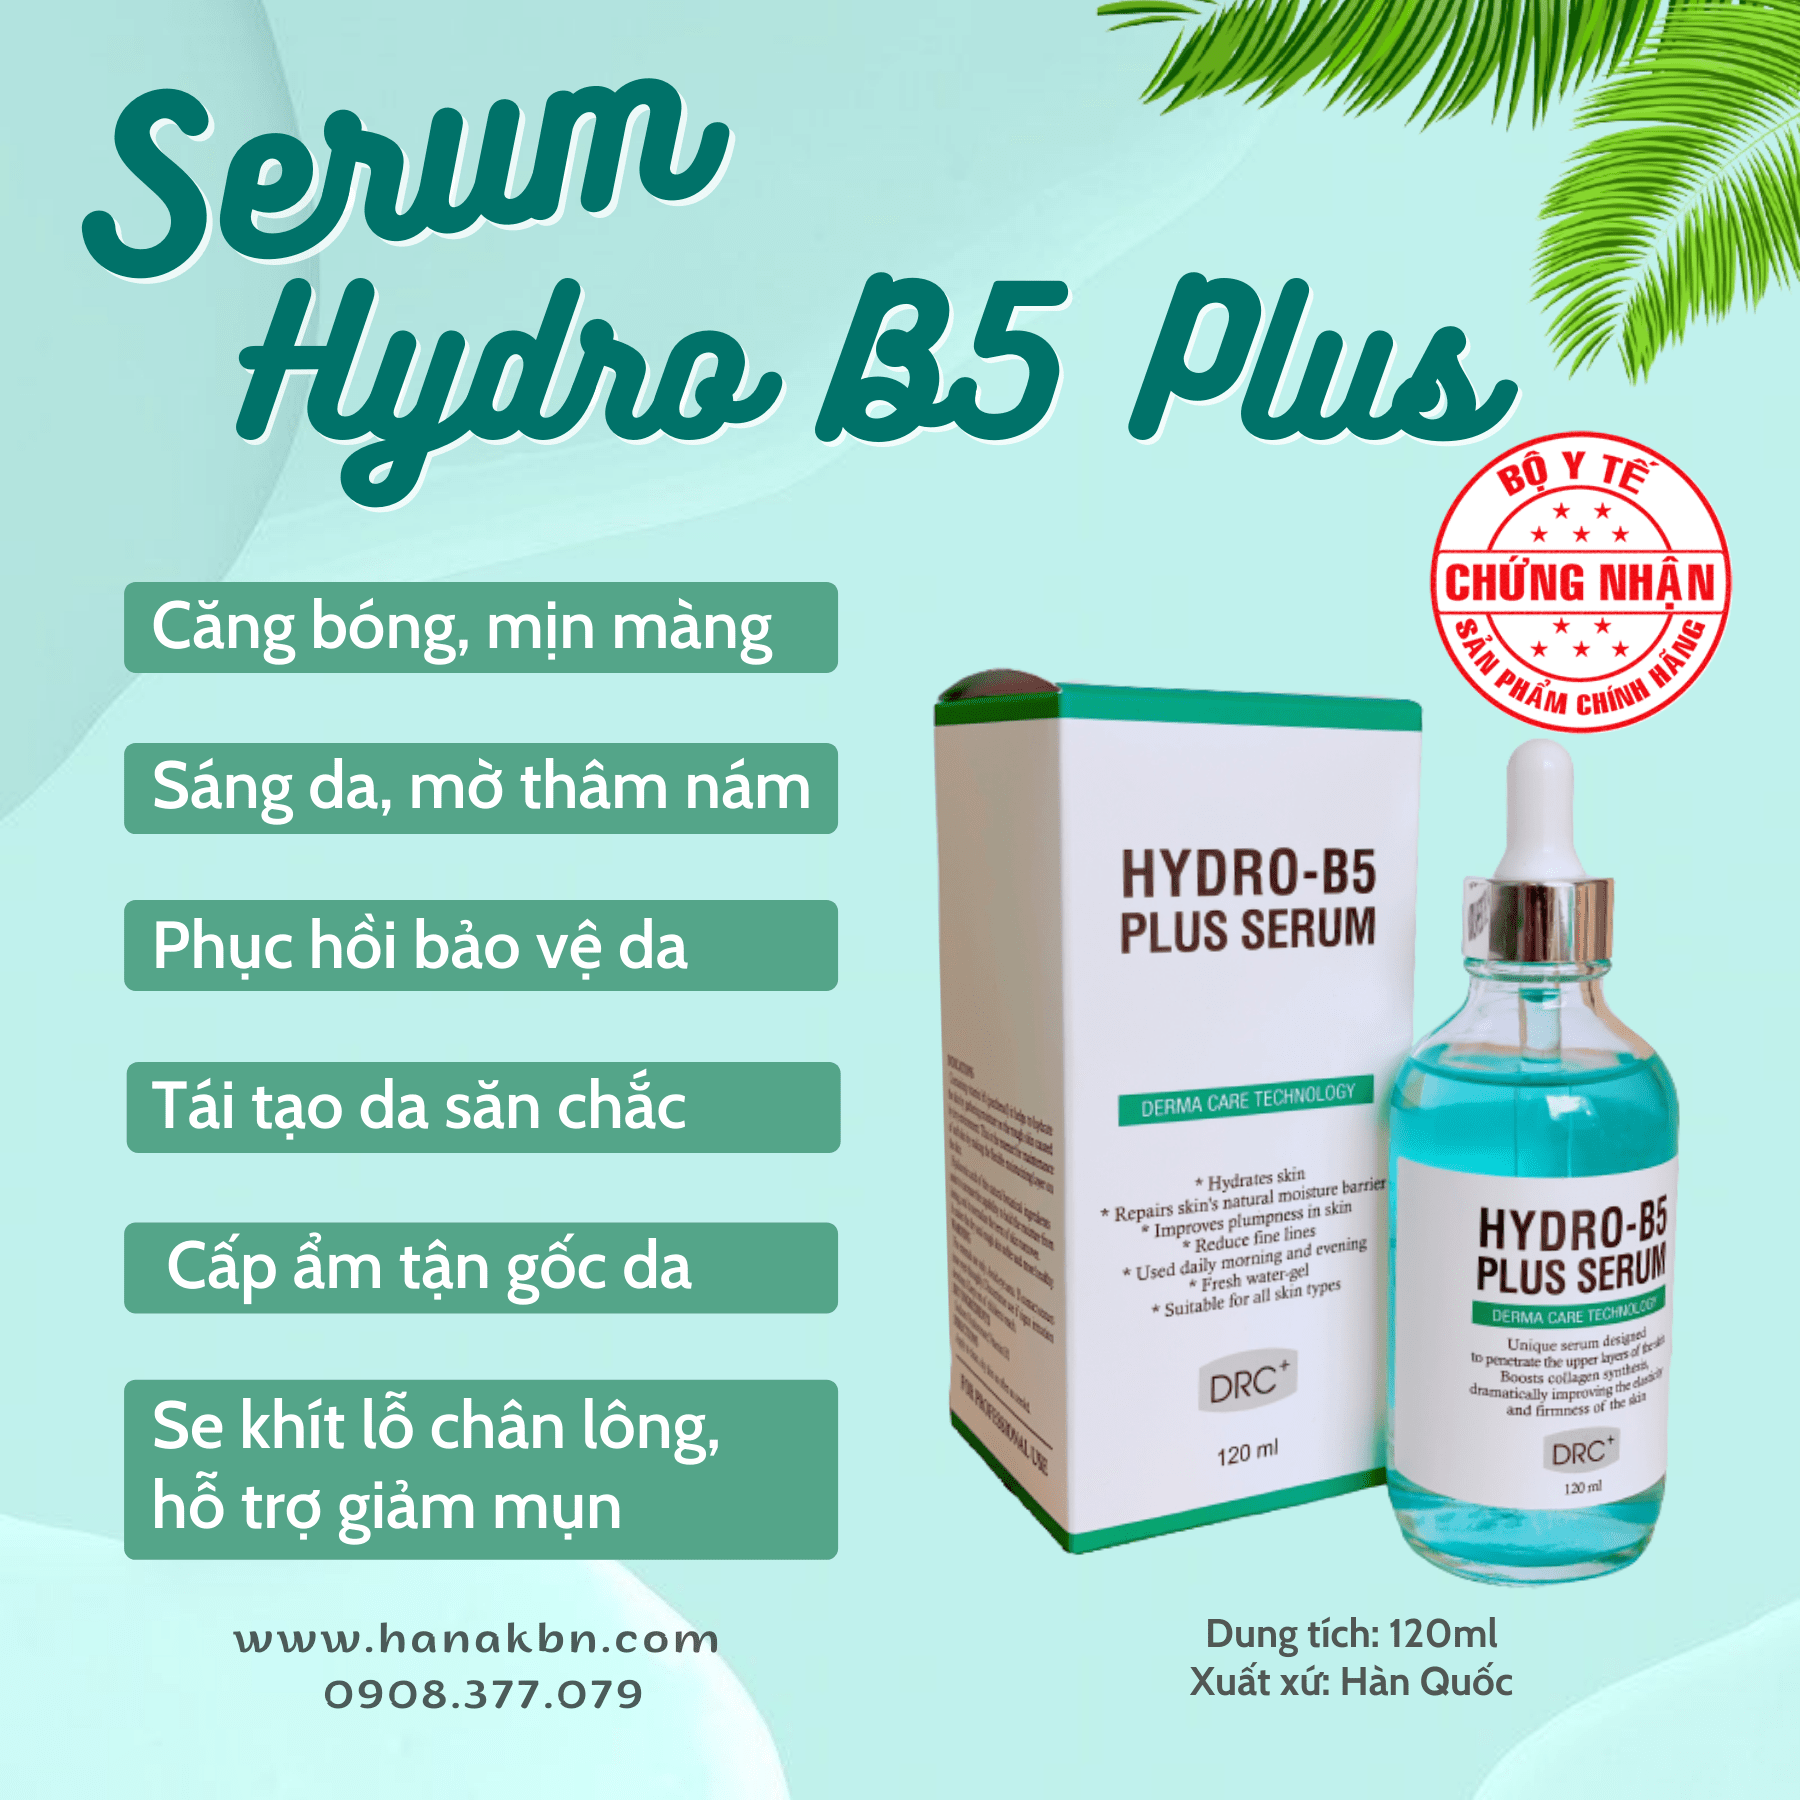 Serum Hydro B5 Plus cấp ẩm, thu nhỏ lỗ chân lông, căng bóng da khô